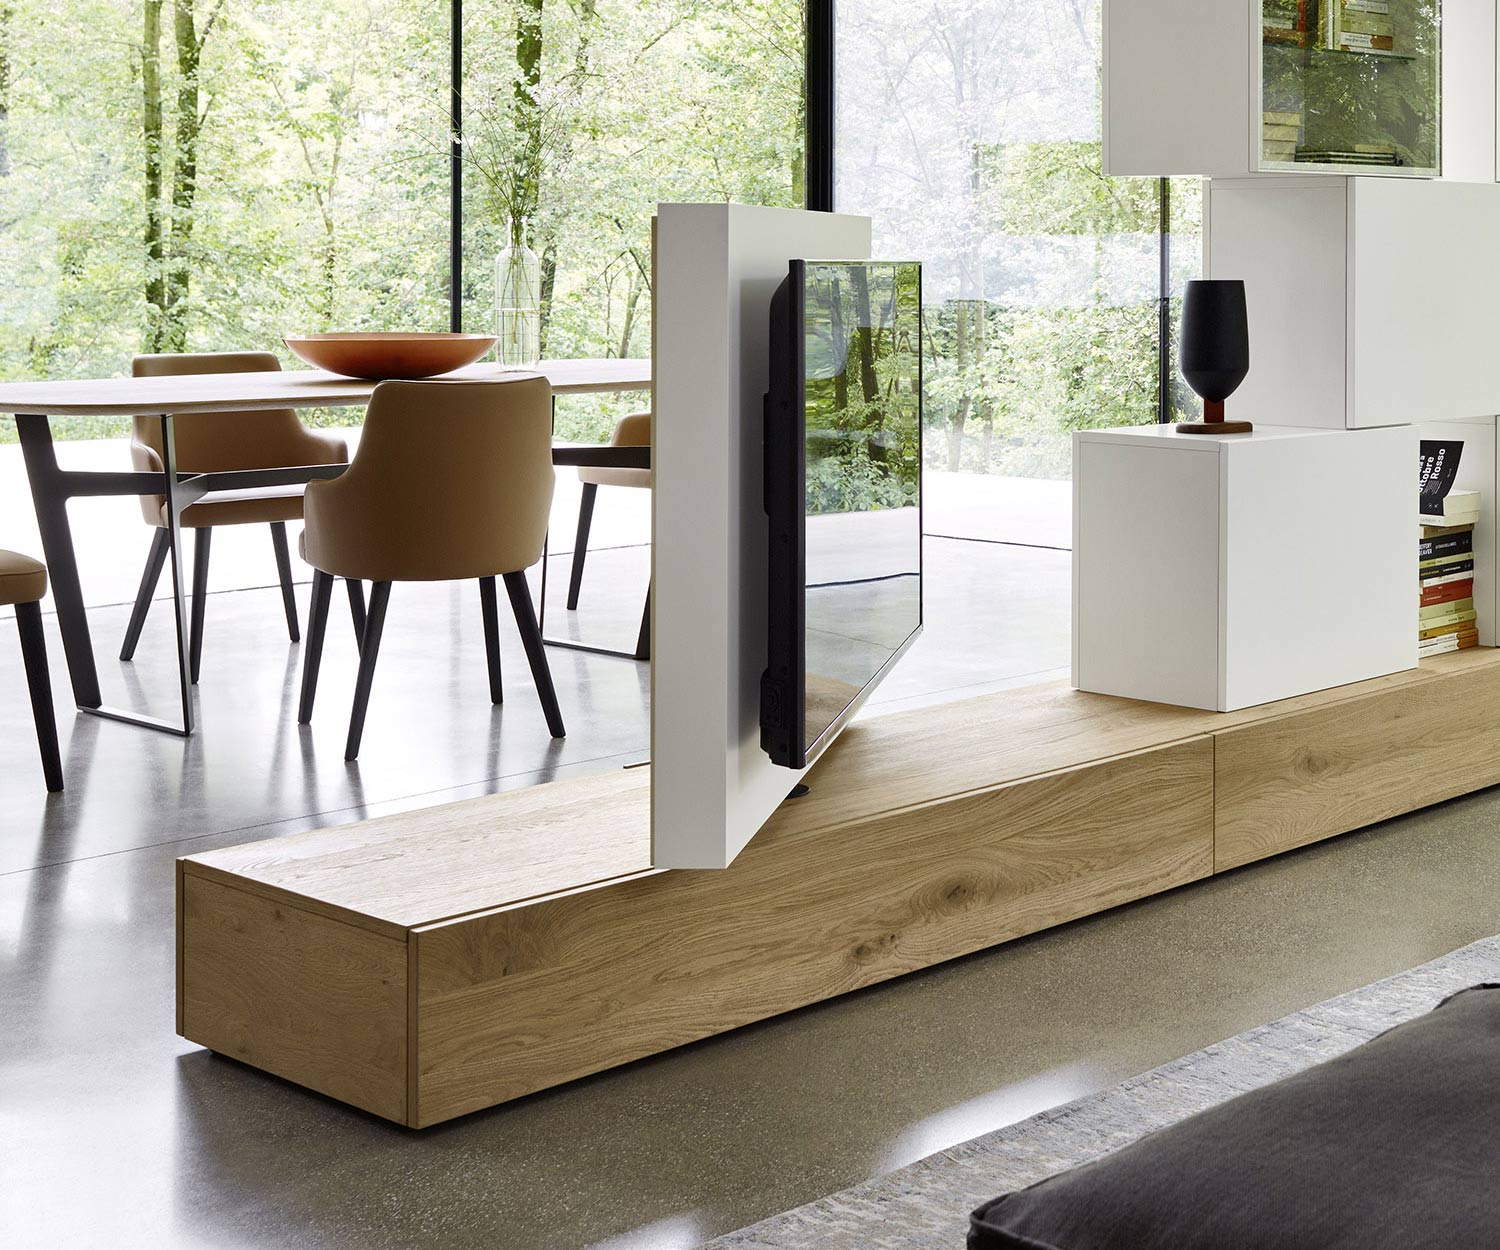 Modernes drehbares Fernseher Design Paneel Wohnzimmer Küche Raumteiler